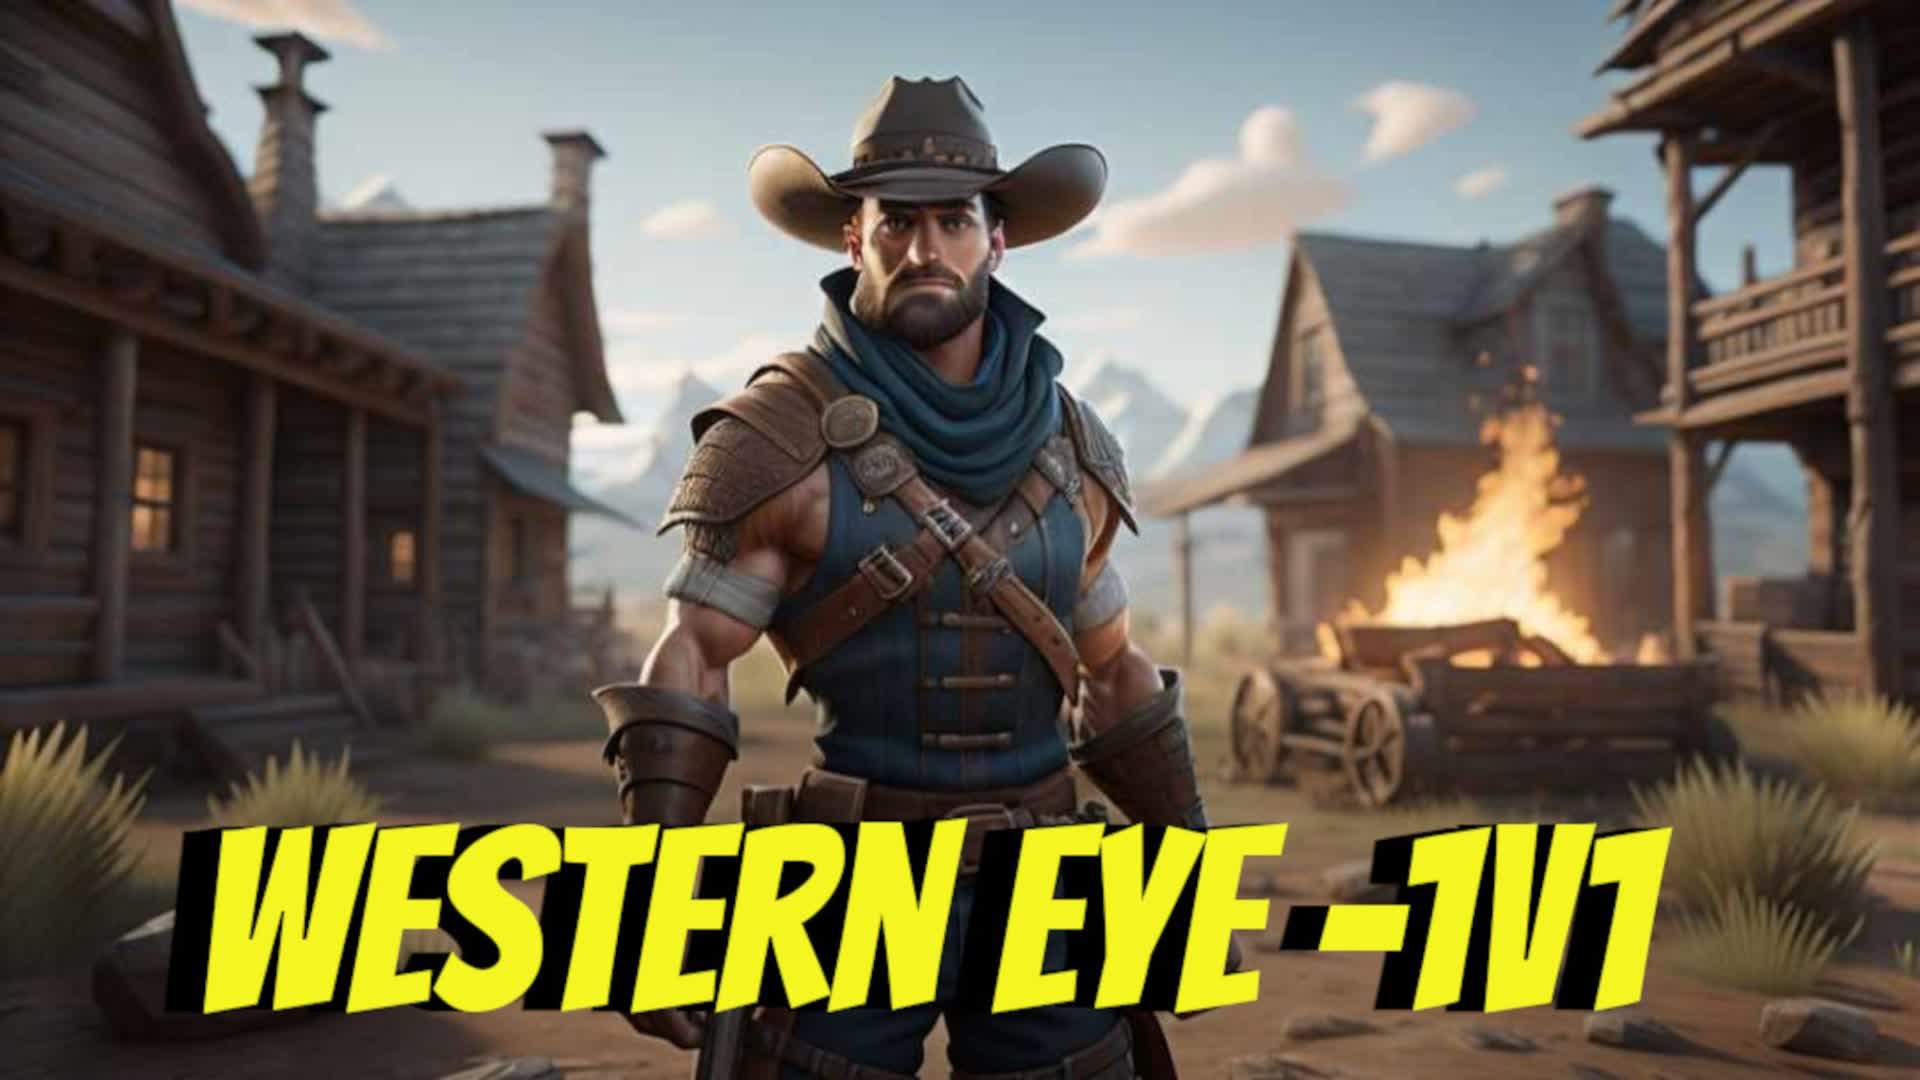 Western Eye - 1V1 - V1.0